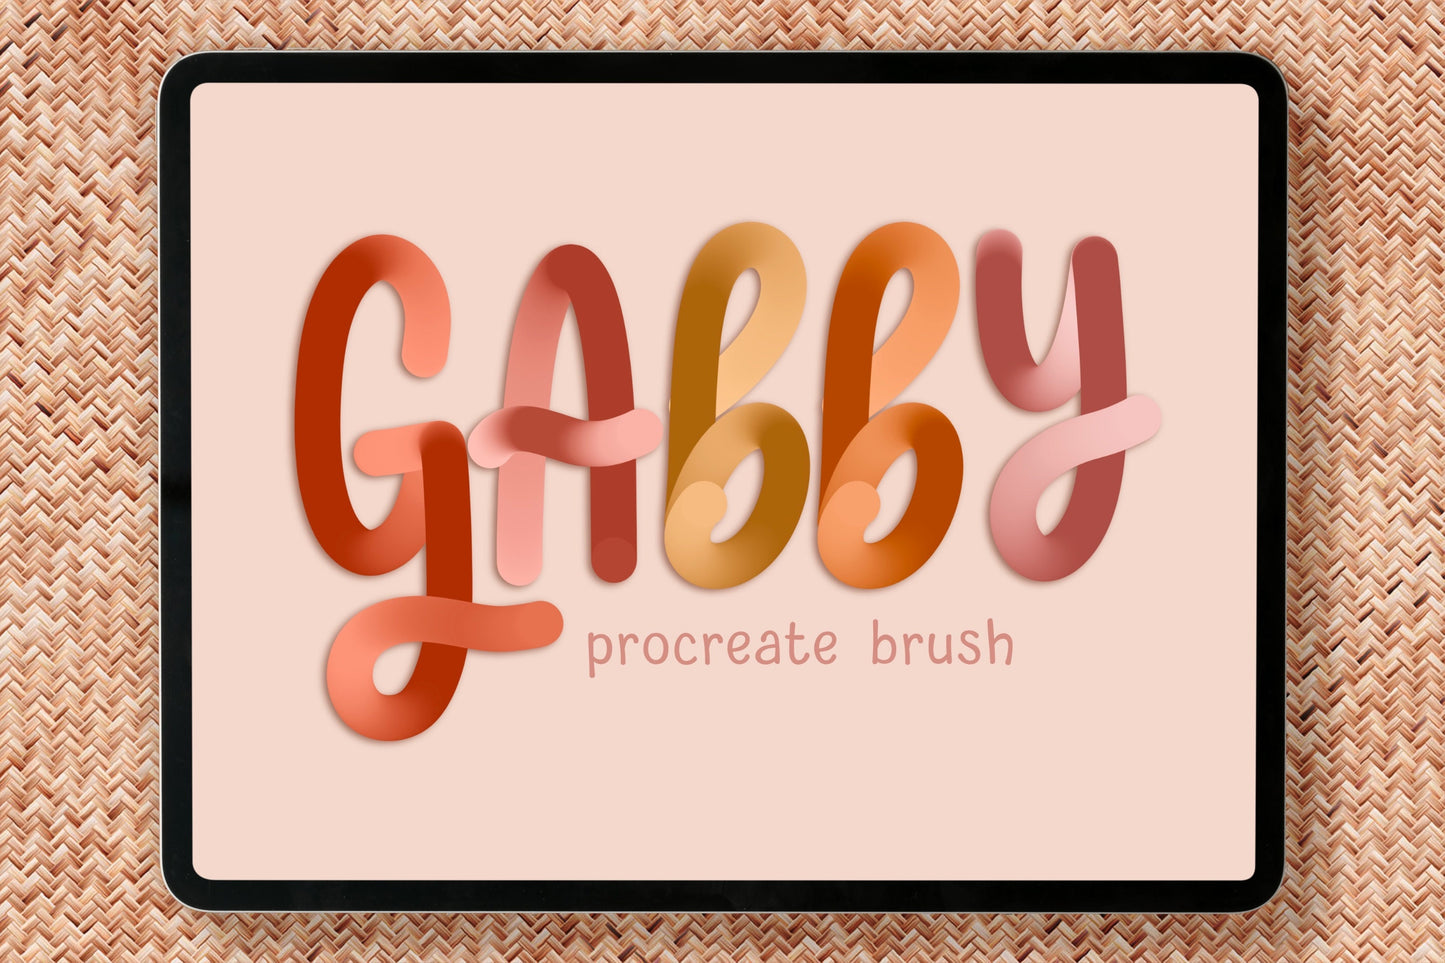 Gabby Procreate Lettering Brush